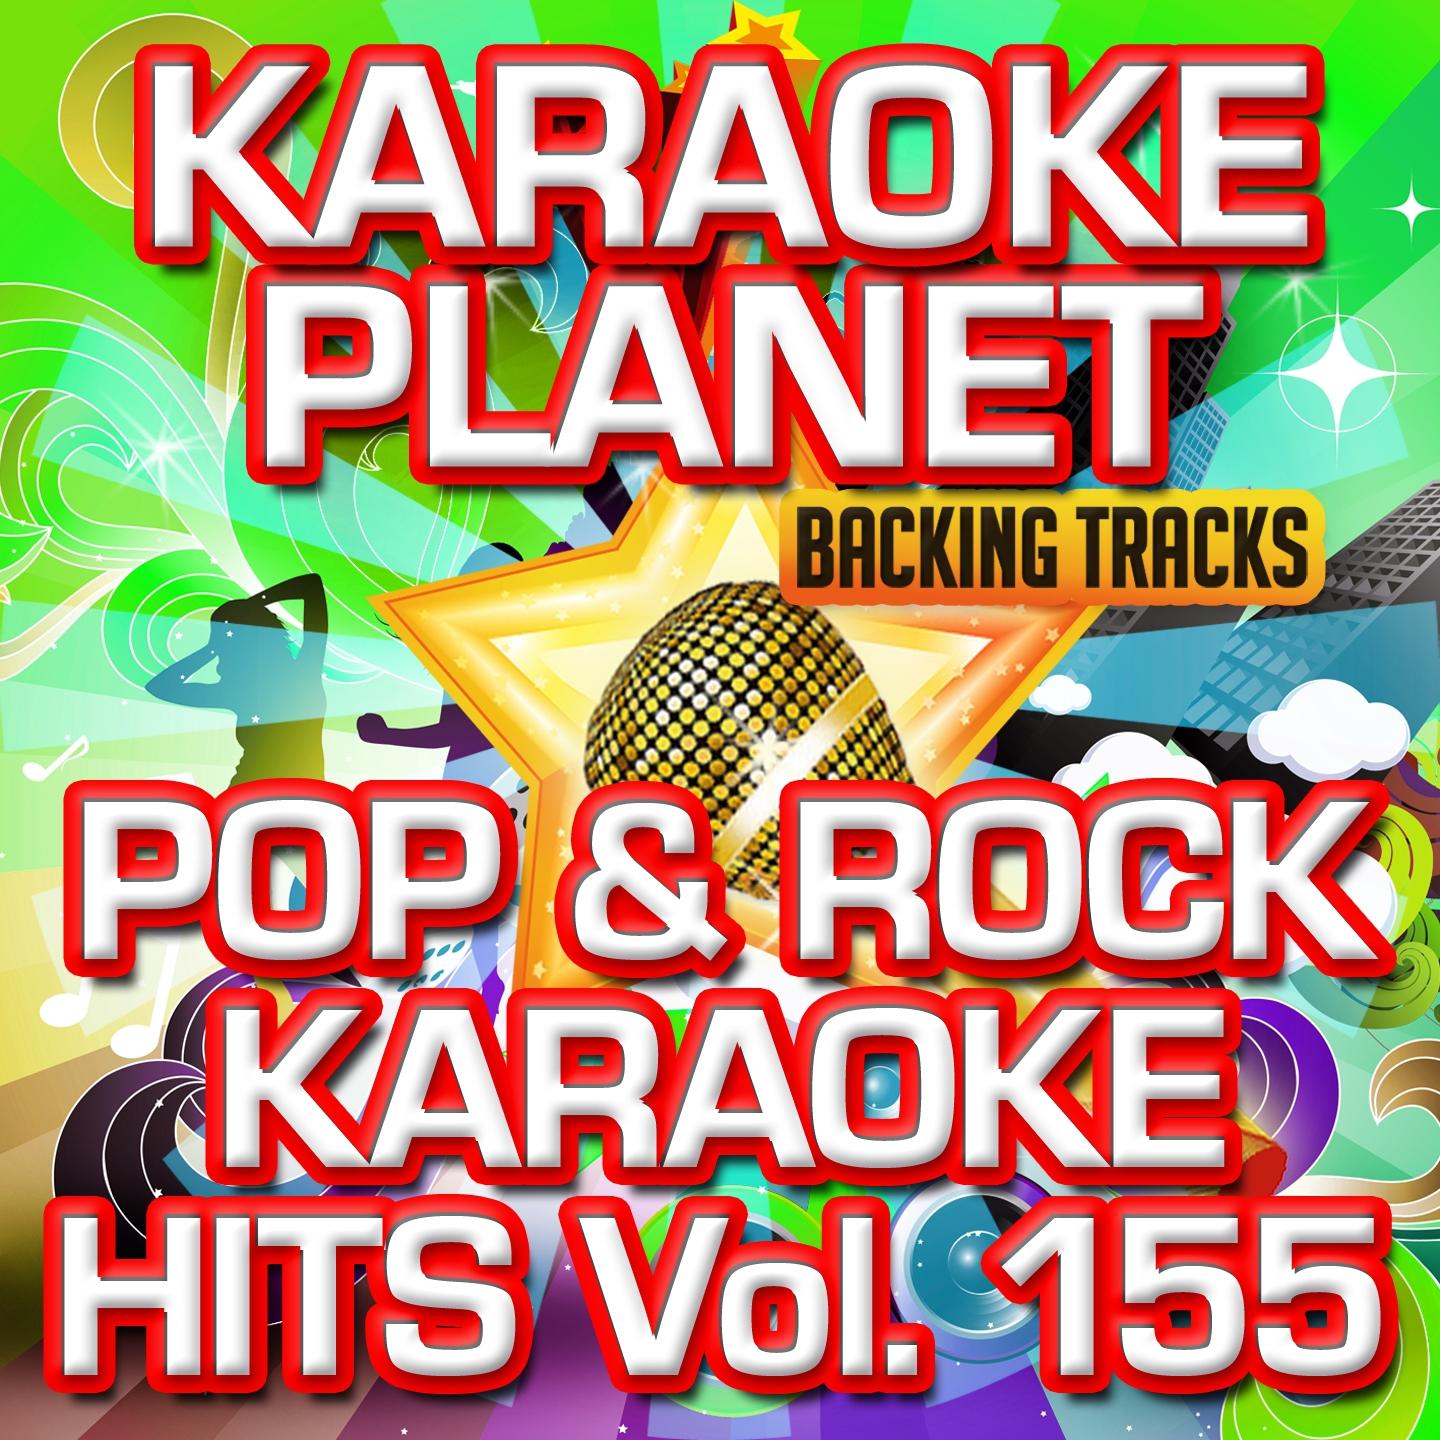 Pop & Rock Karaoke Hits, Vol. 155